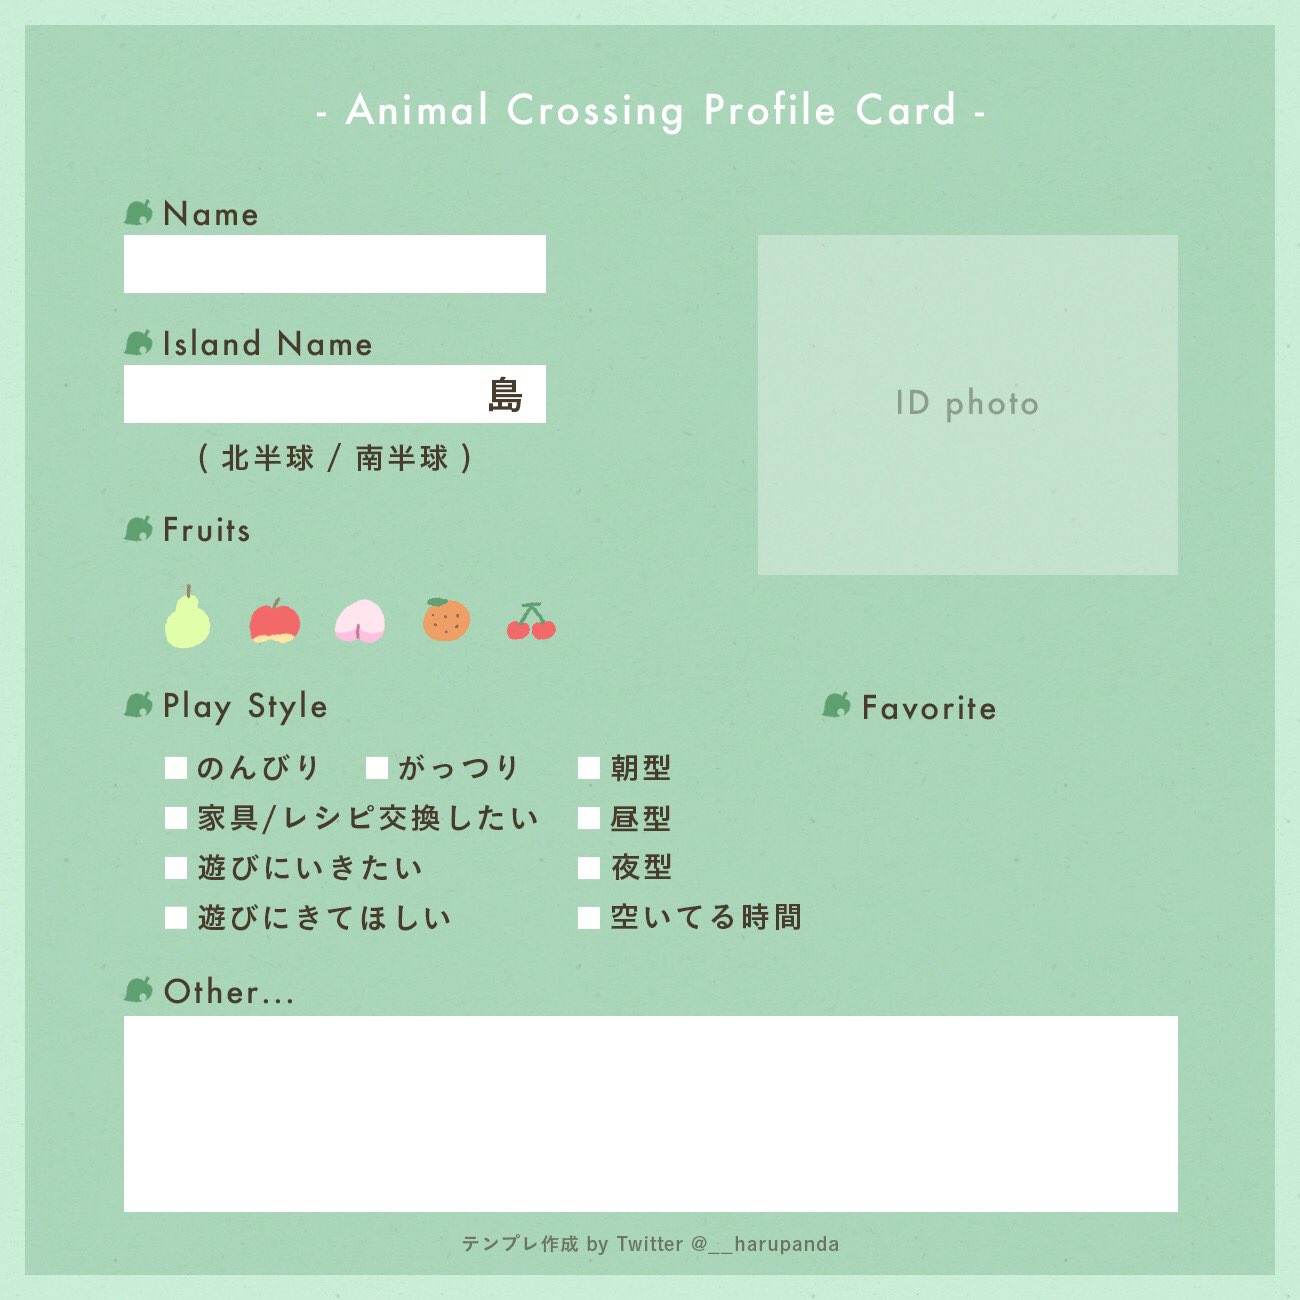 Haru Panda Cafe 自己紹介カード自作しました ᴗ よかったら使ってください Favoriteは推し住人や 島のお気に入りスポット等 ご自由にご記入ください 使用報告のリプ不要 二次配布 自作発言ng あつまれどうぶつ